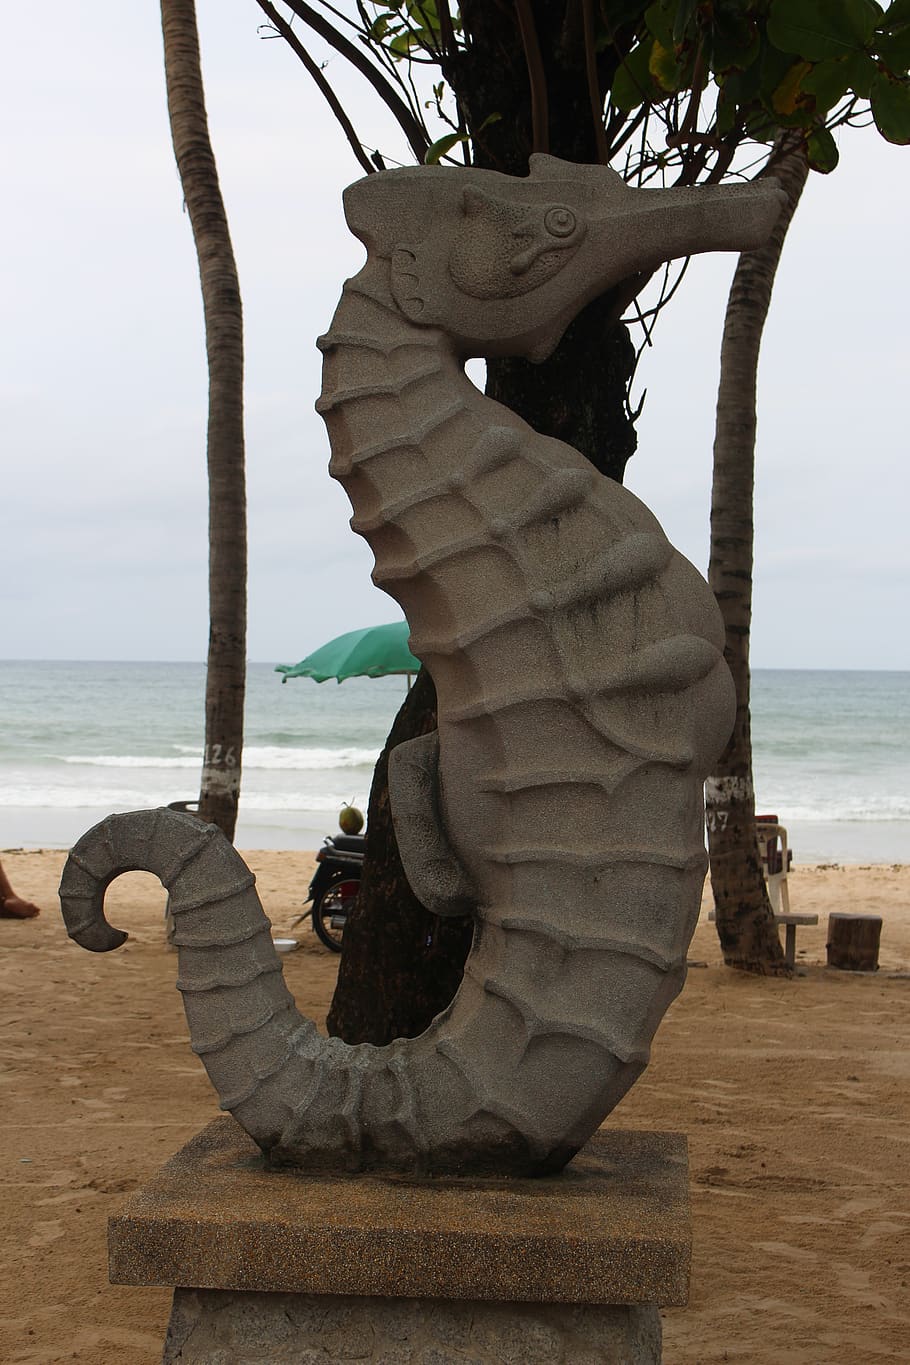 Tailandia, estatua, caballito de mar, escultura, viaje, playa, agua, mar, arte y artesanía, cielo